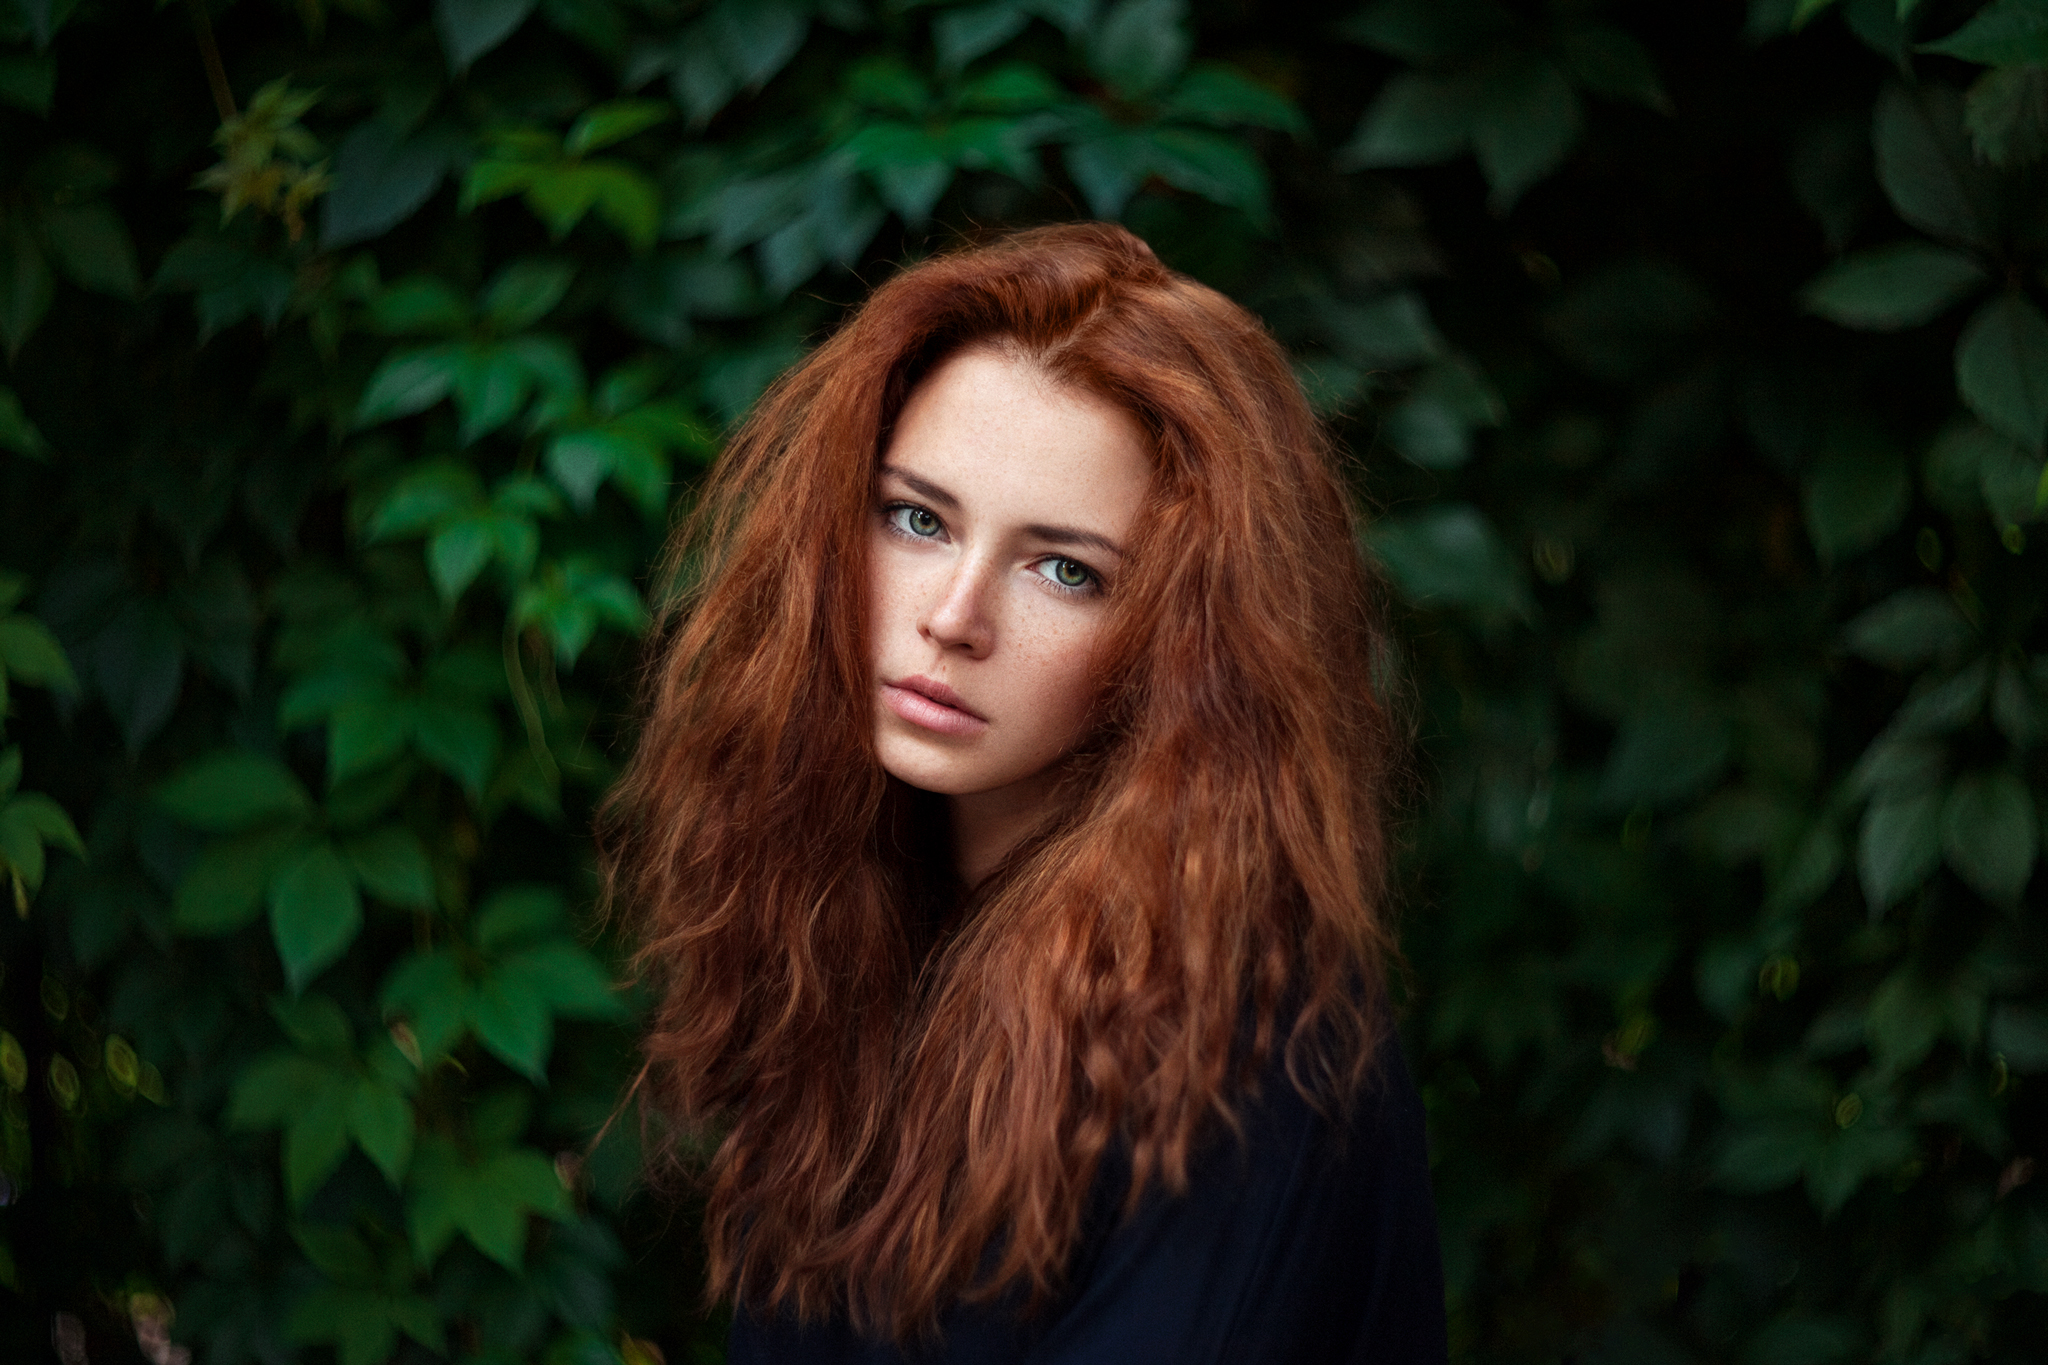 People 2048x1365 Ivan Ustinov women redhead long hair blue eyes freckles looking at viewer depth of field leaves Anna Zabolotskaya